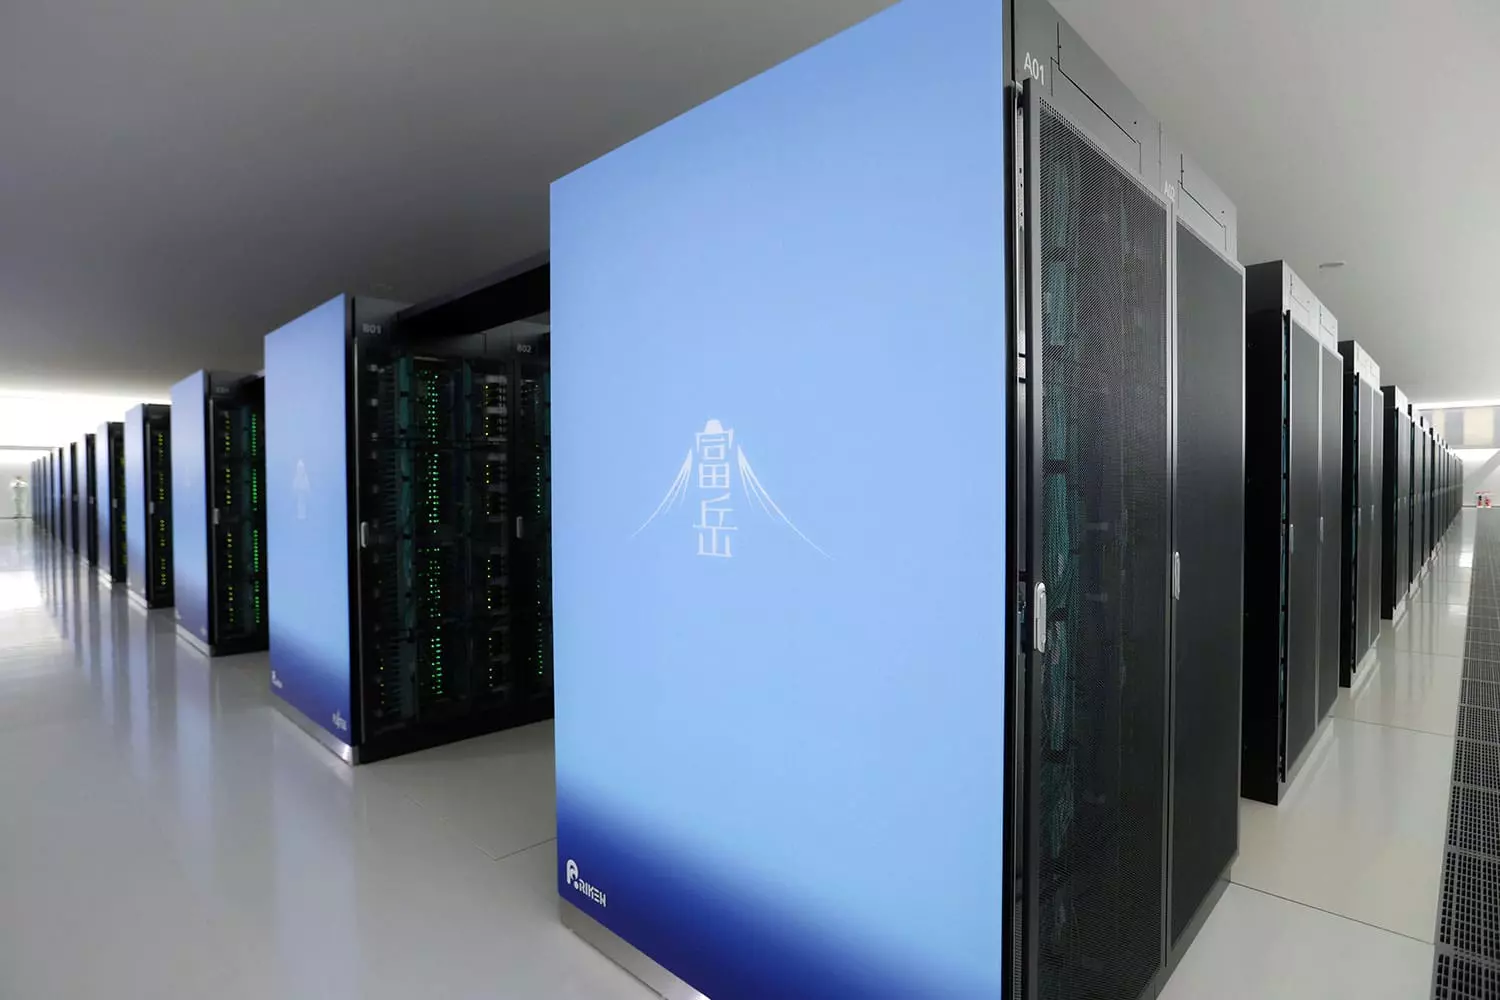 ARM alapú japán szuperszámítógép-fürt lett a világ leggyorsabbja